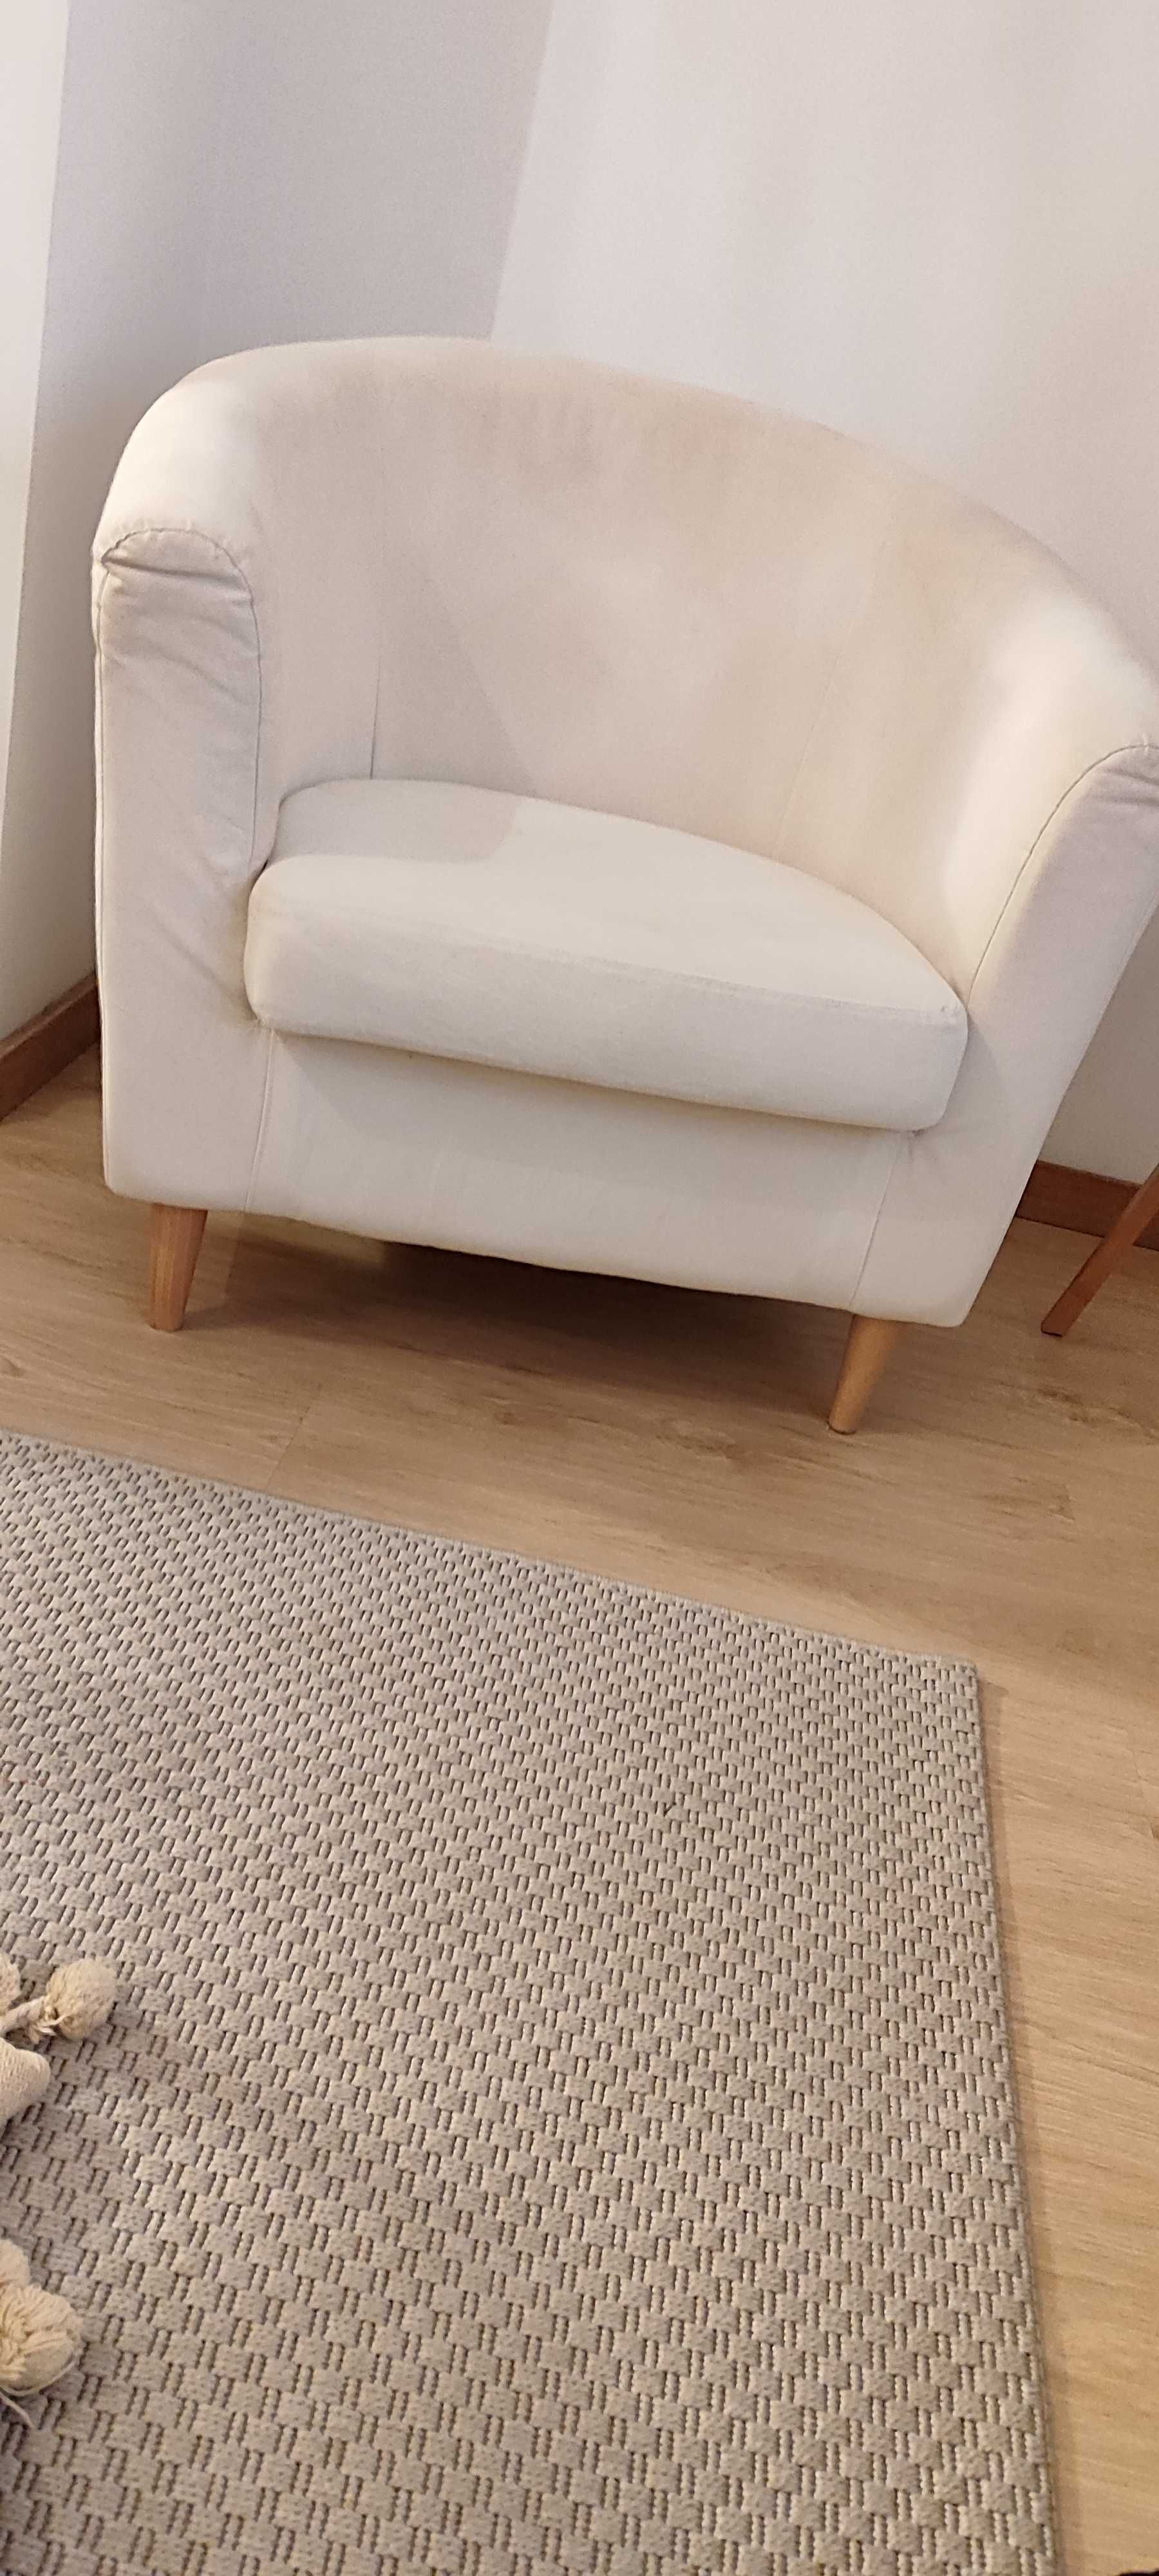 Sofá IKEA excelente